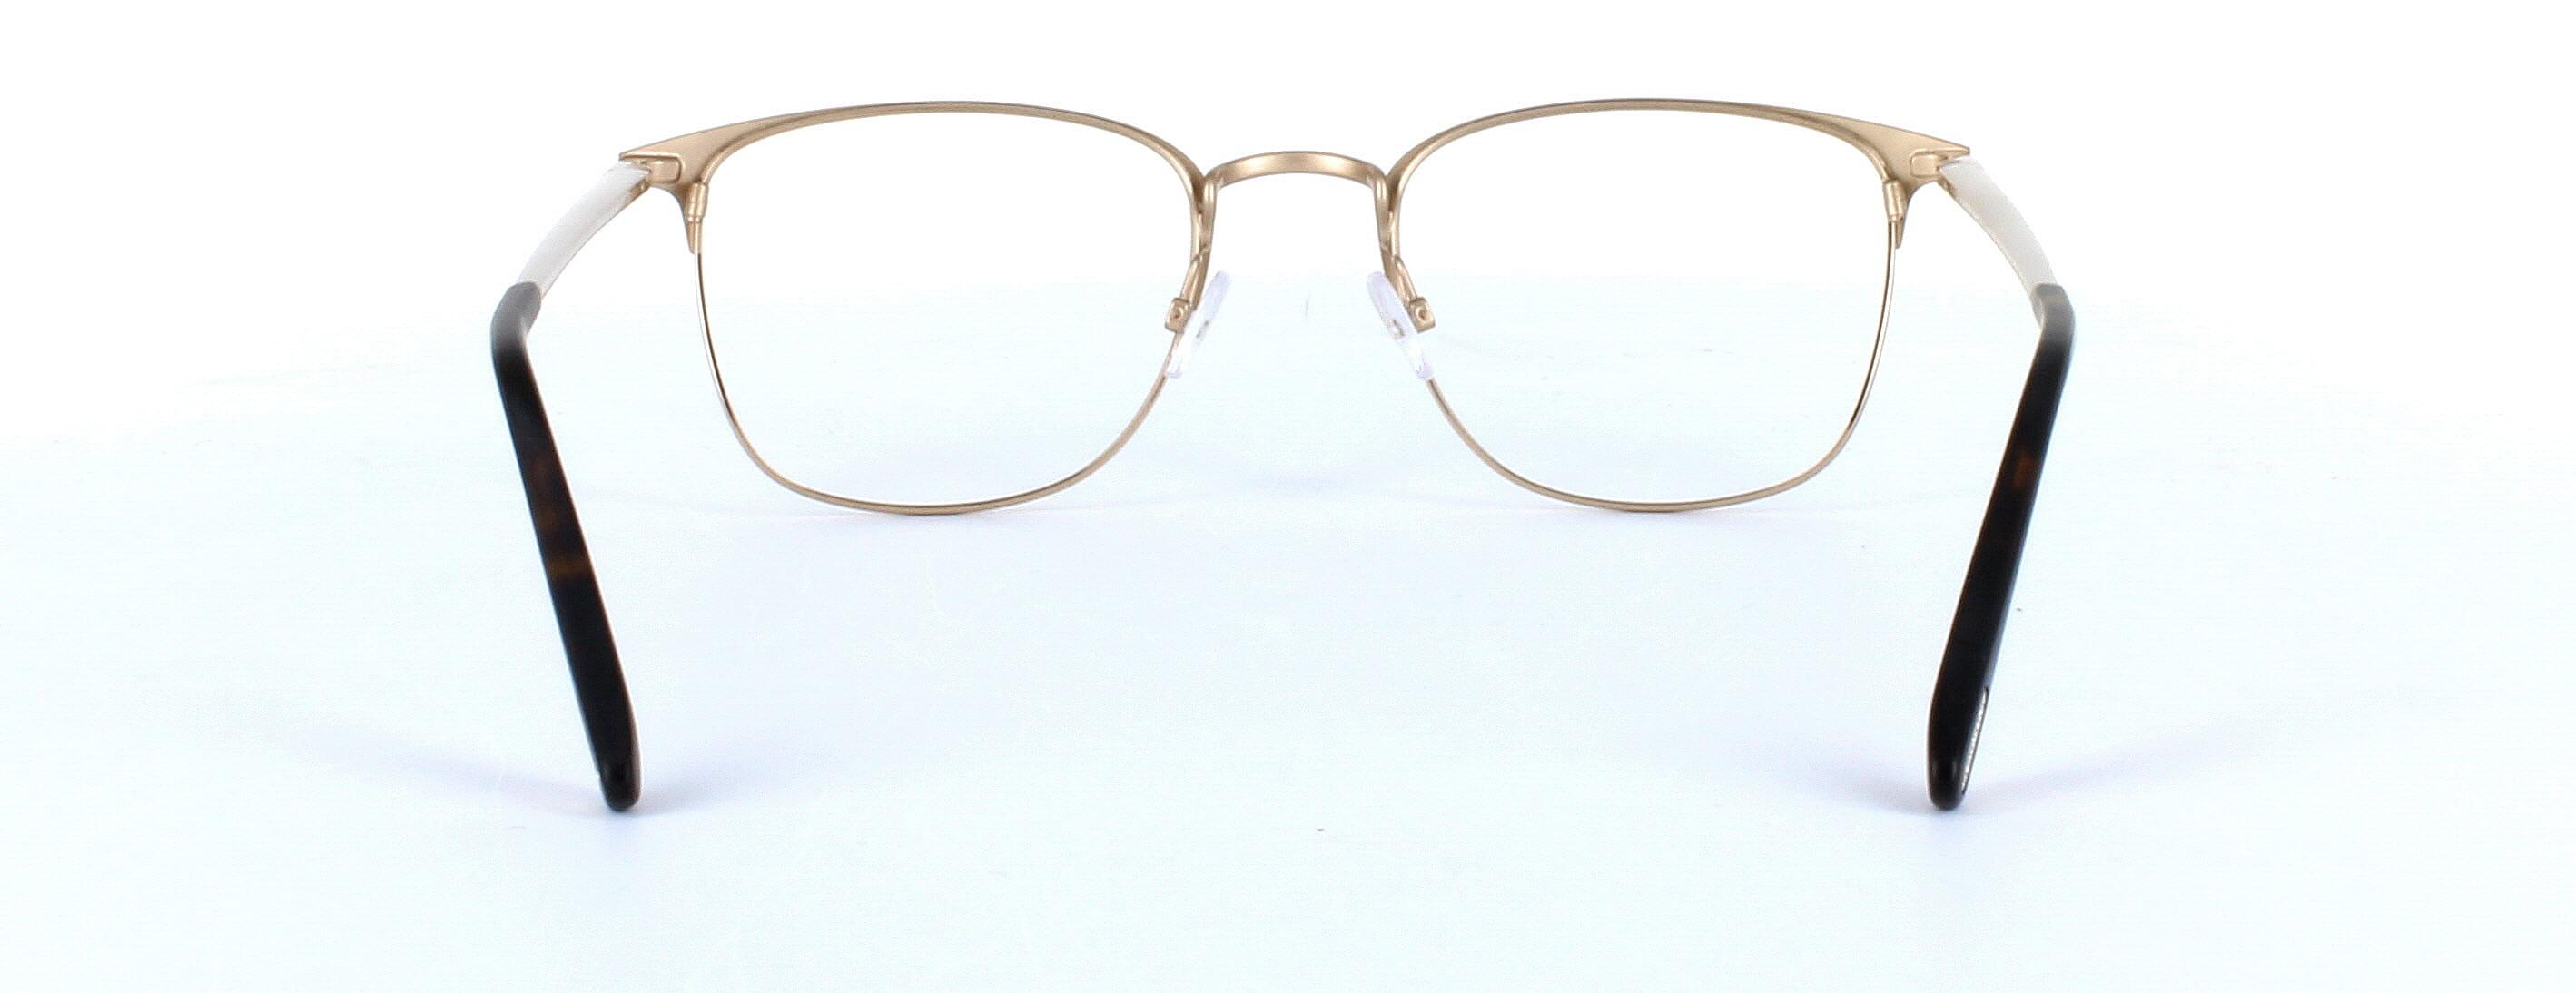 Tom Ford FT5453 in Matt Gold | Glasses Online | Glasses2You